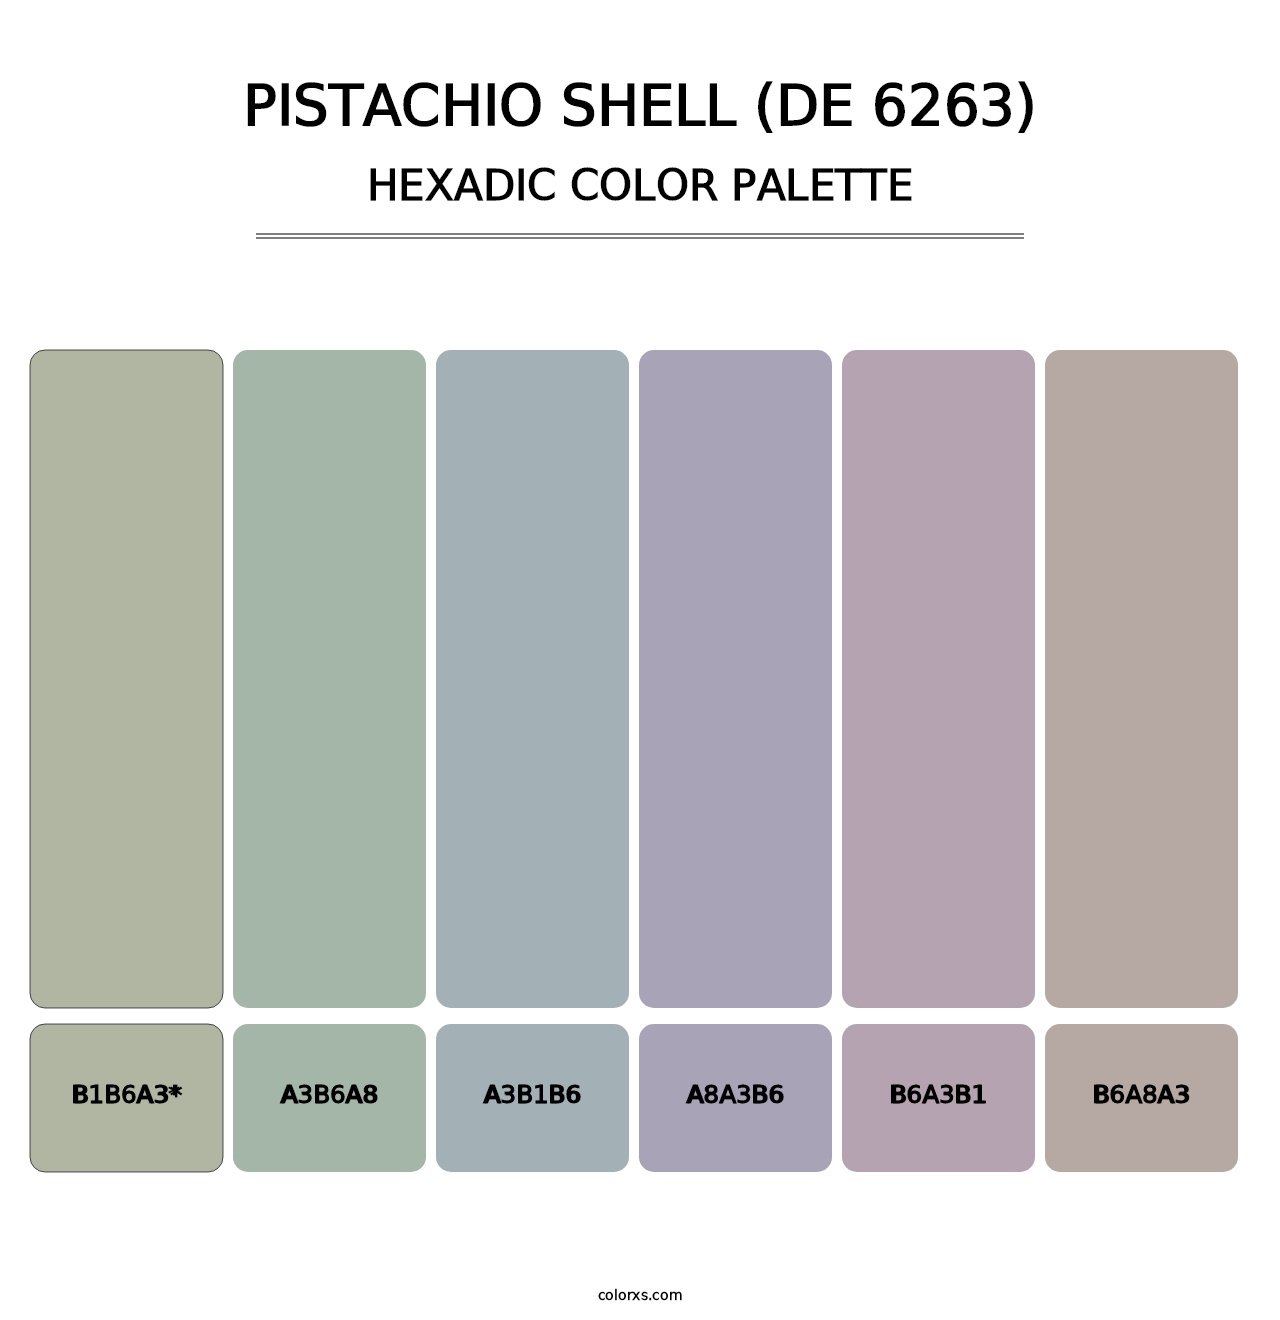 Pistachio Shell (DE 6263) - Hexadic Color Palette